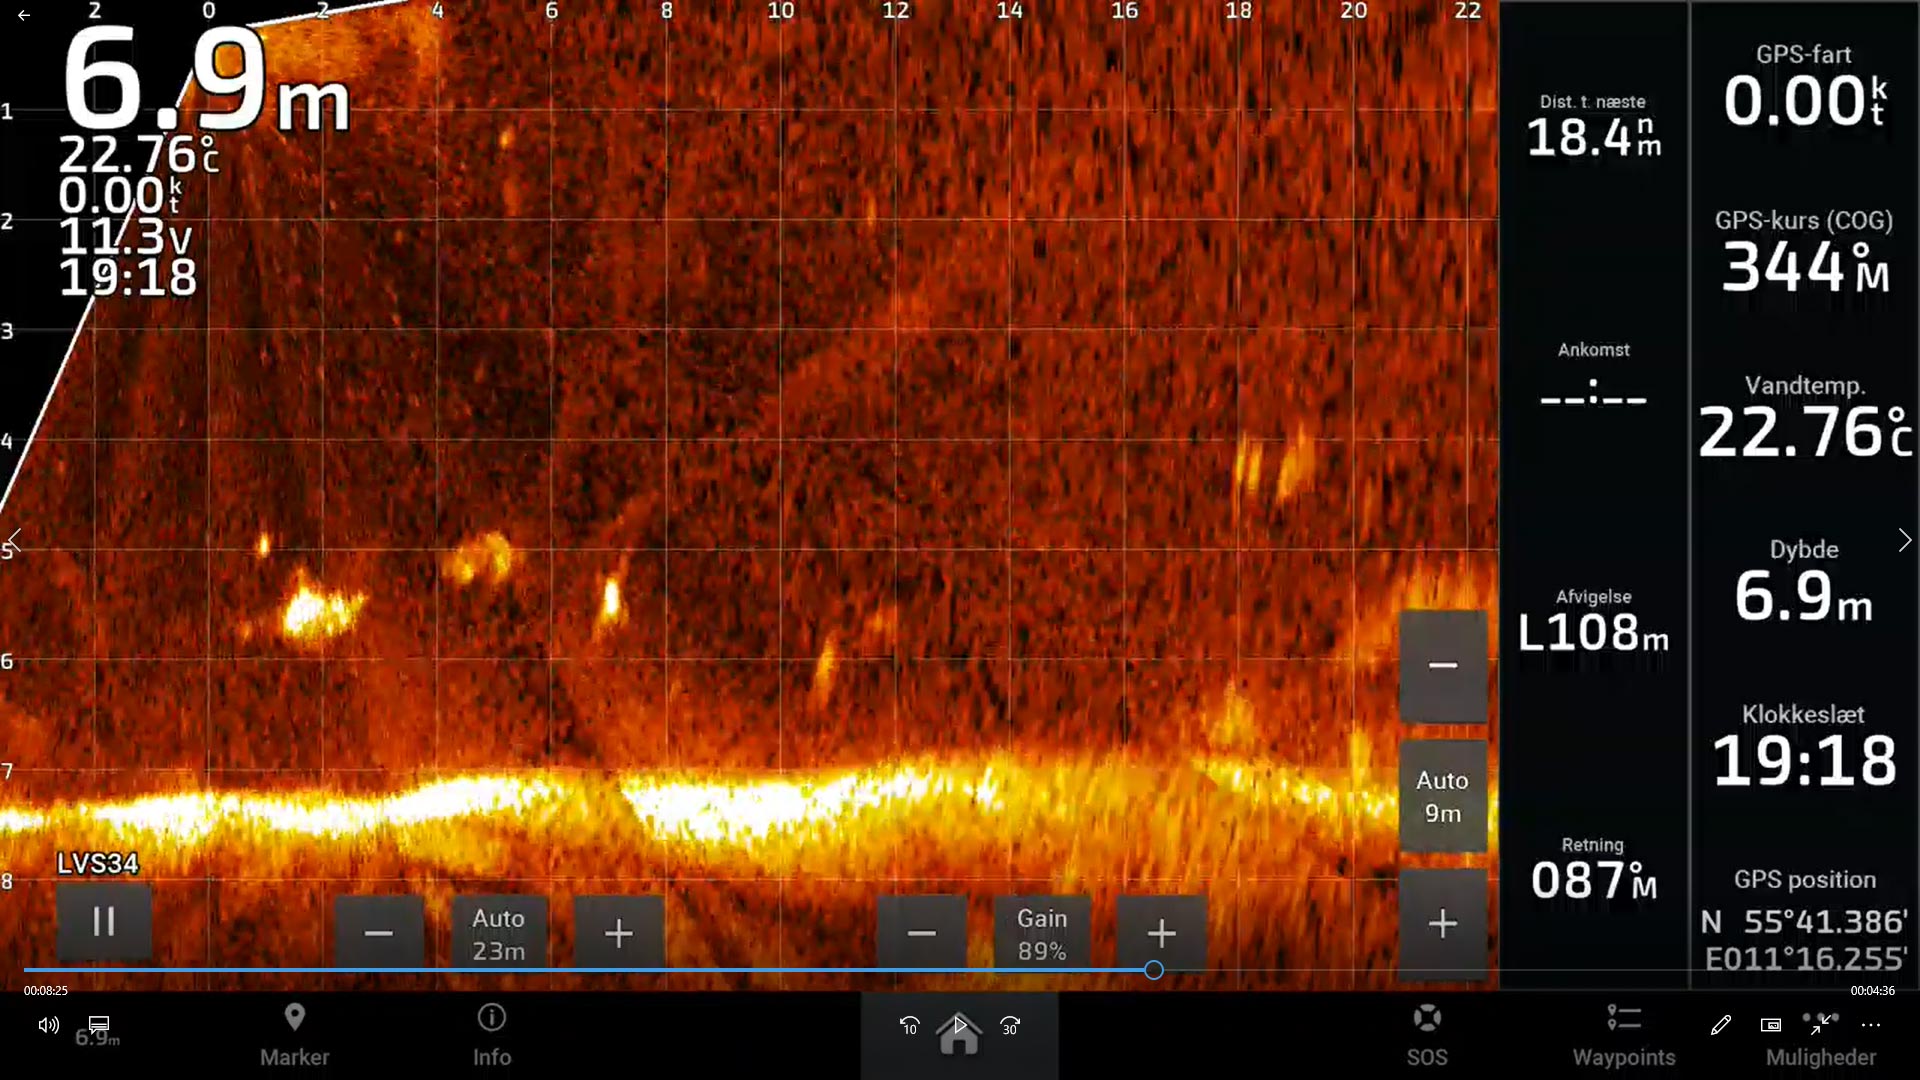 Sådan ser det ud på LiveScopet lige inden en gov beluga. Bemærk at både lod og orm kan ses på loddet.